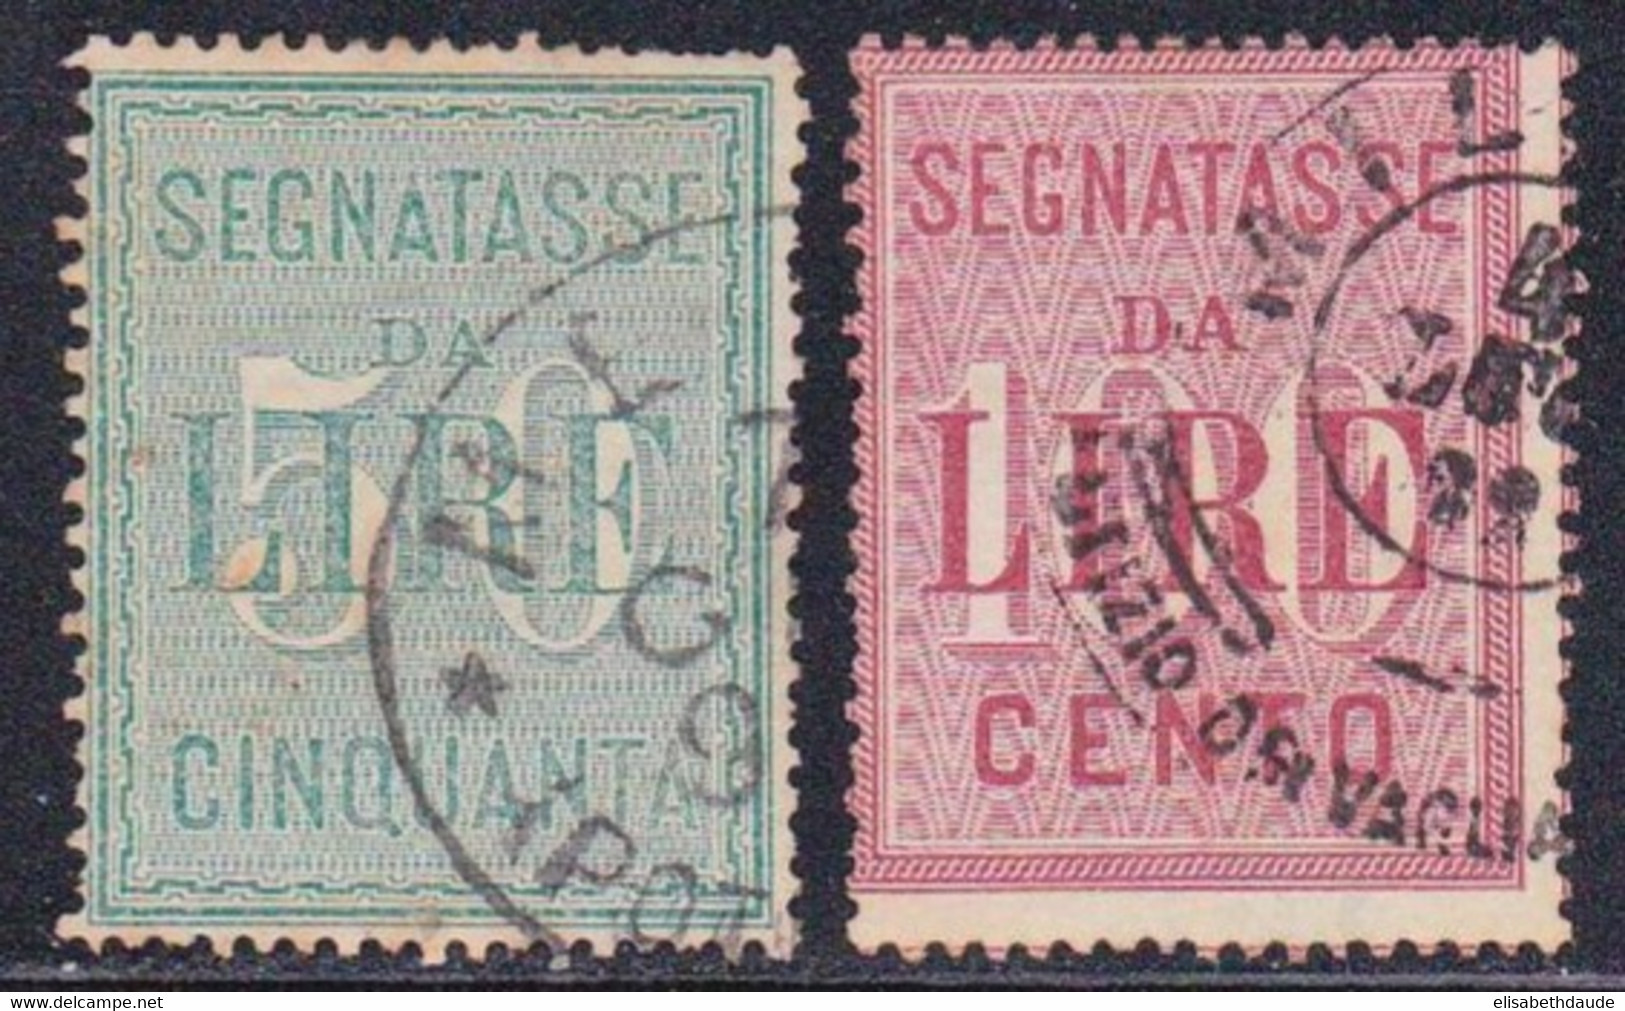 ITALIE - 1884 - YVERT N°20/21 OBLITERES - TAXE - COTE = 60 EUROS - Usados